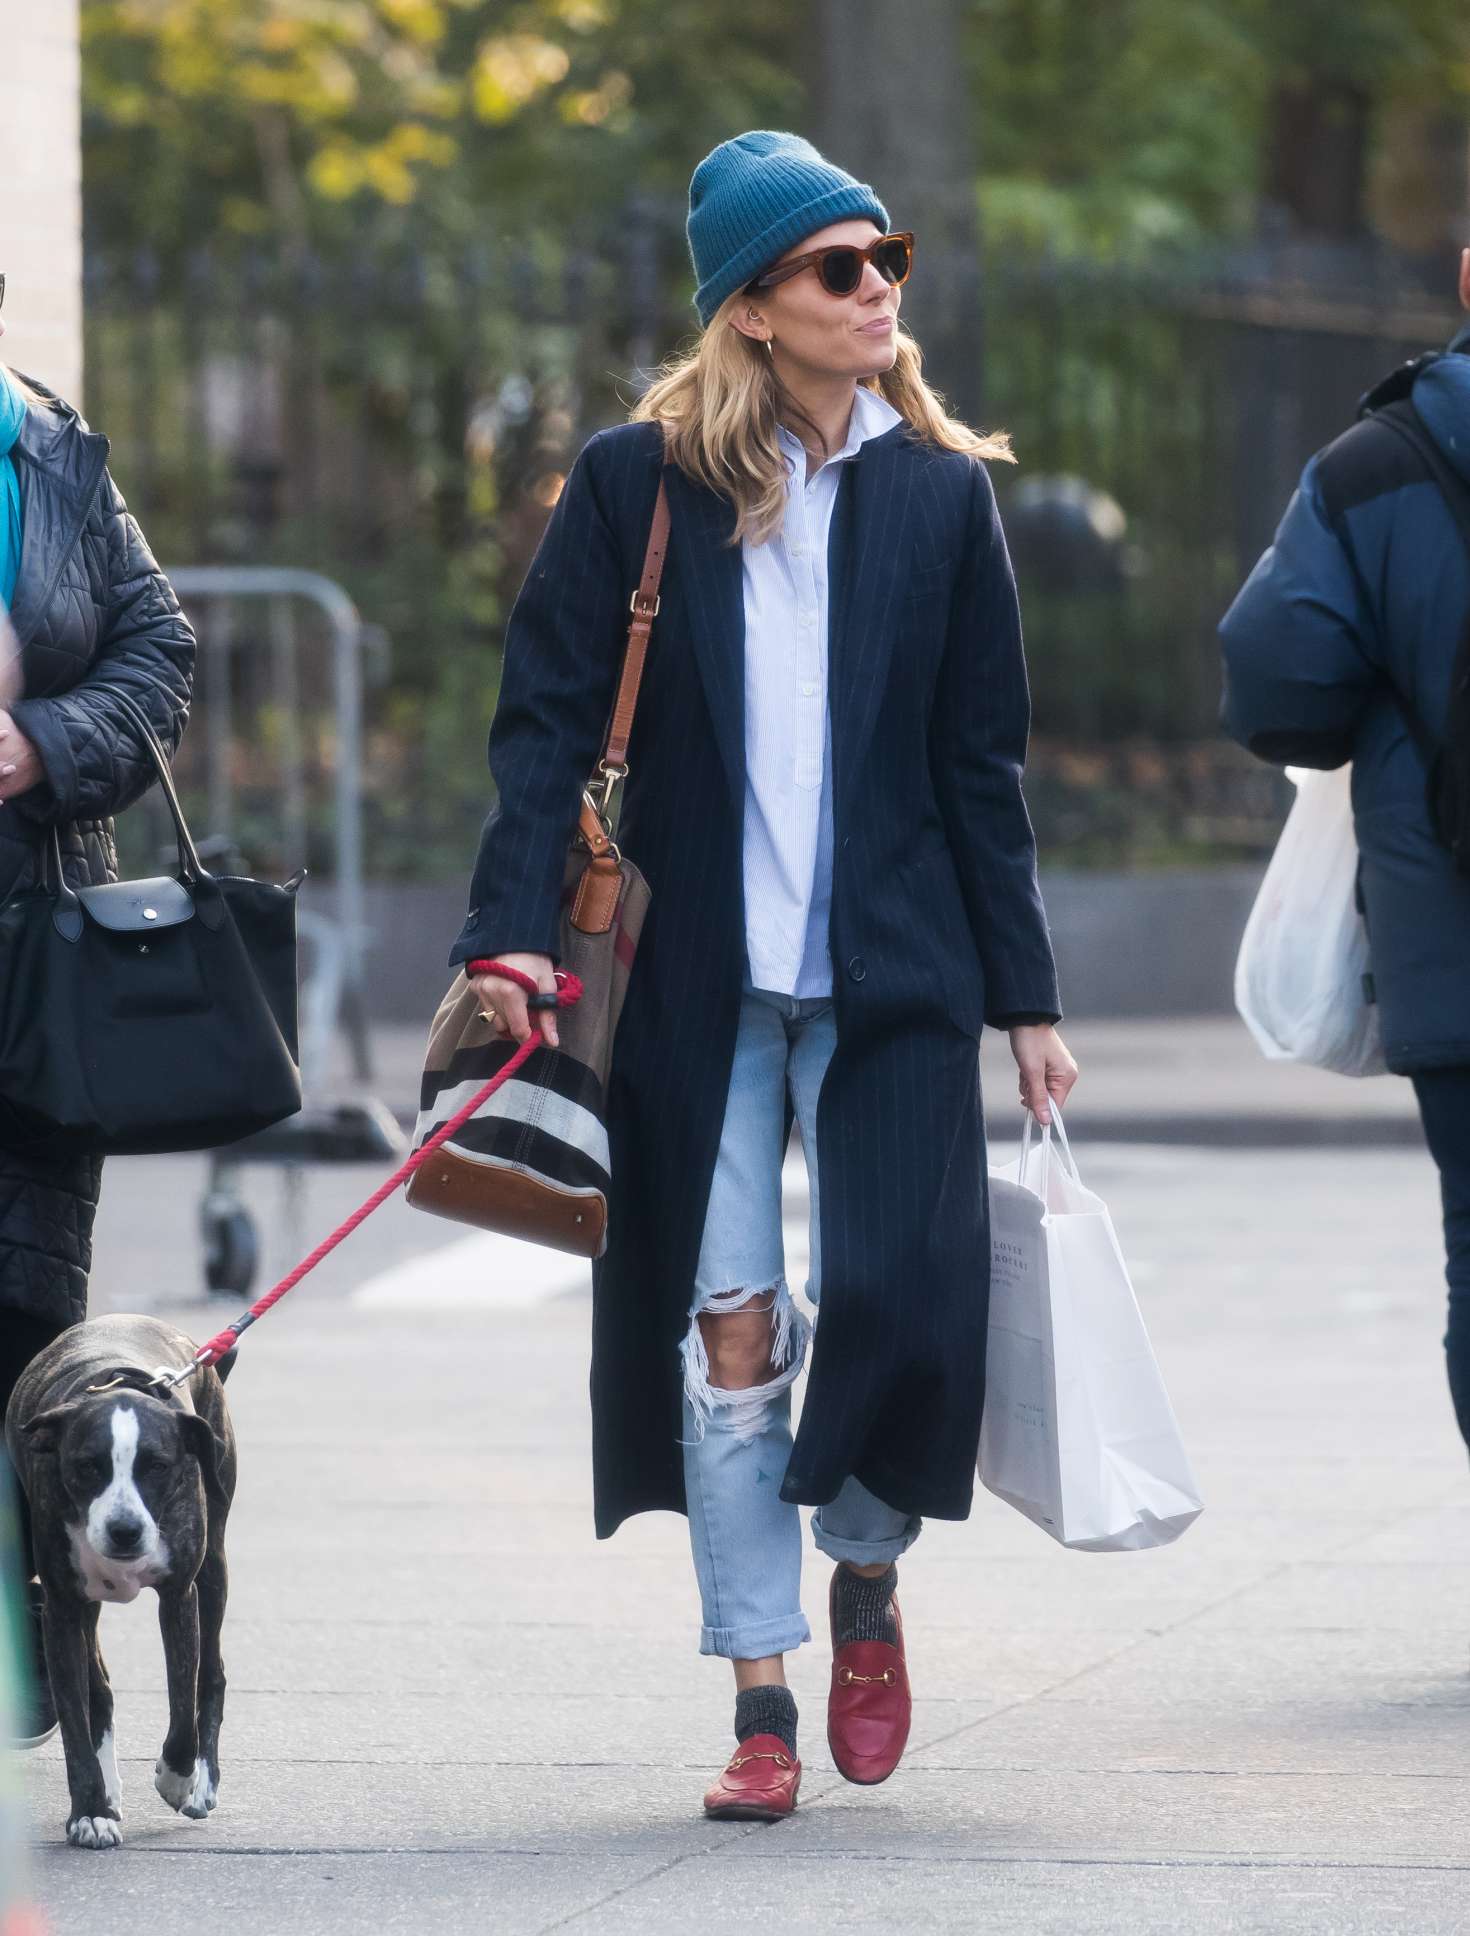 Sienna Miller - Walking her dog in New York